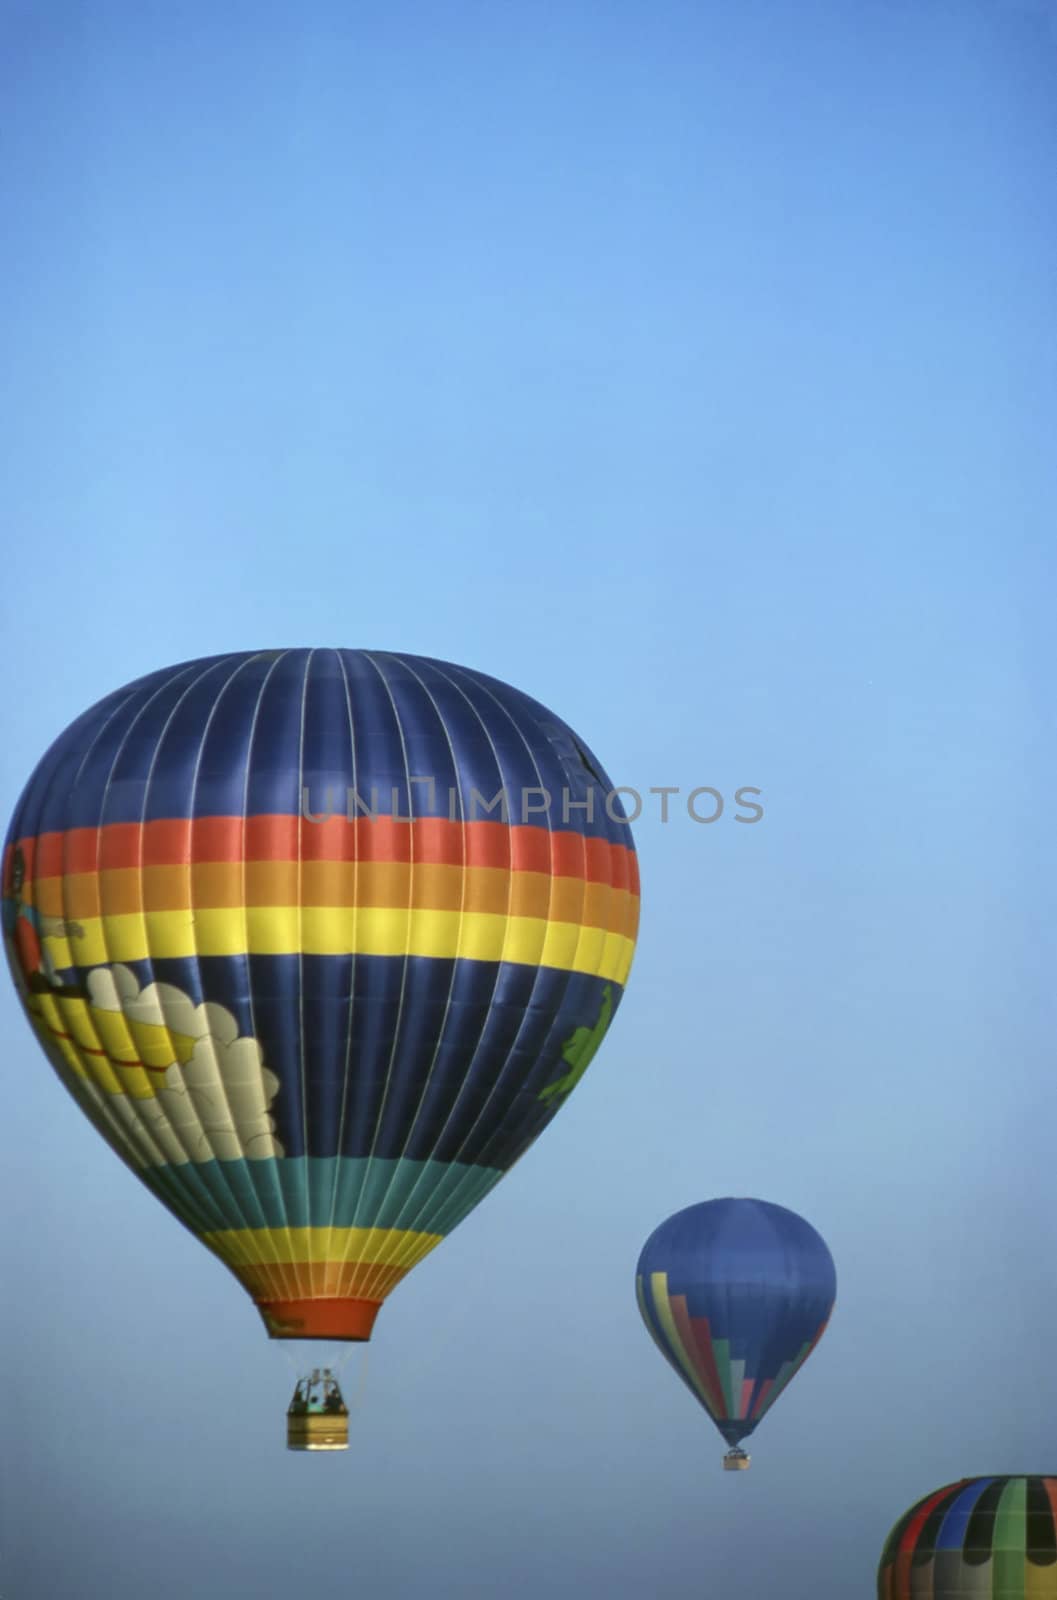 Hot Air Balloon by jol66